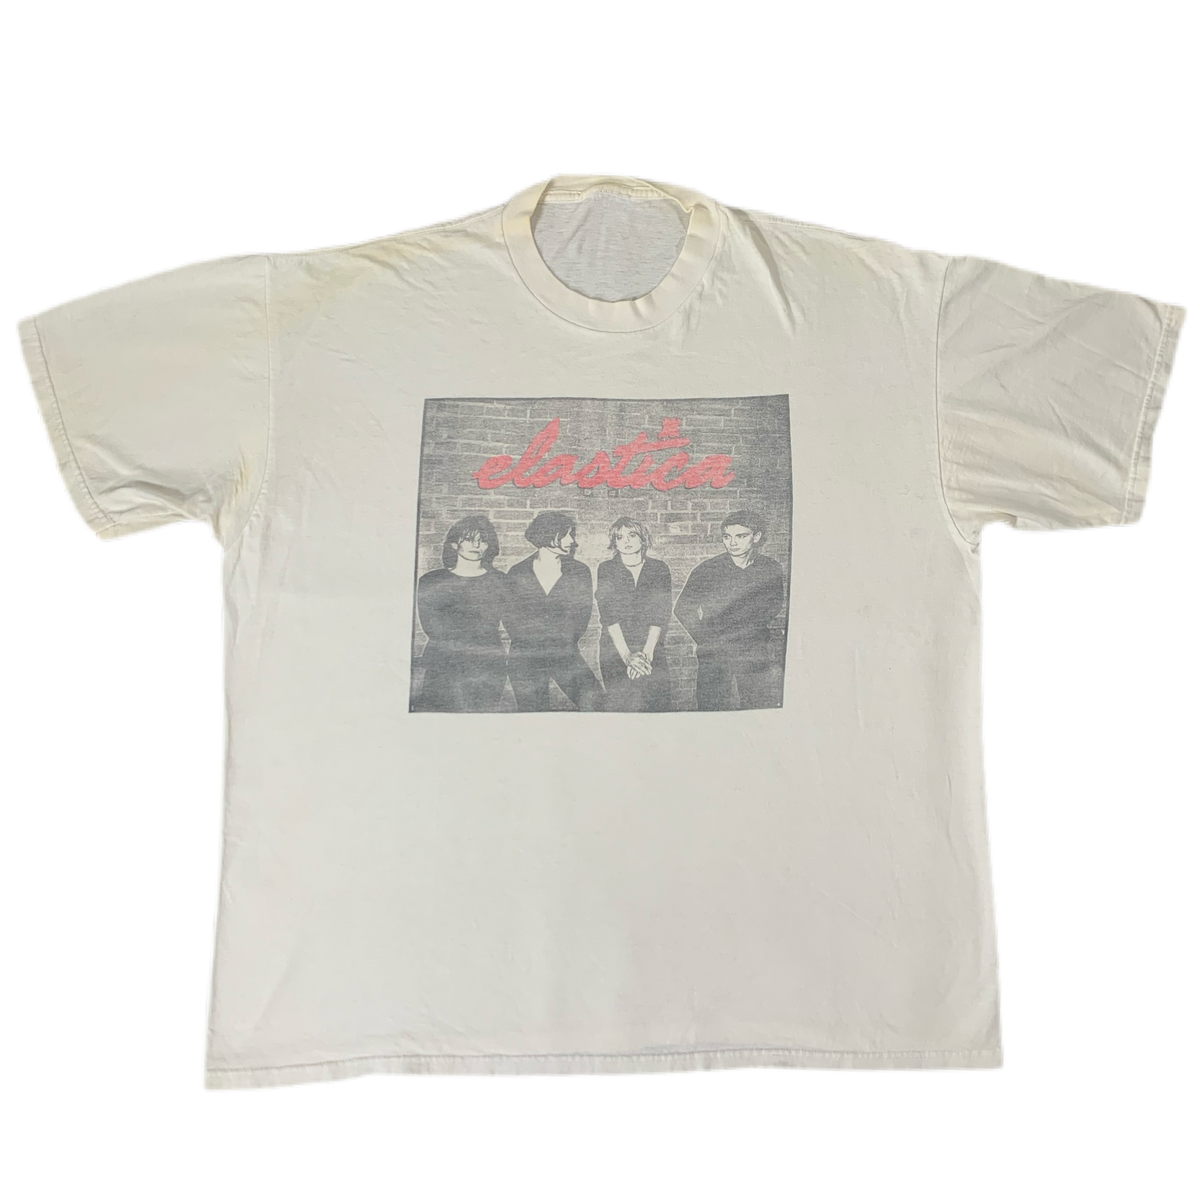 Vintage Elastica “Self-Titled” Promo T-Shirt